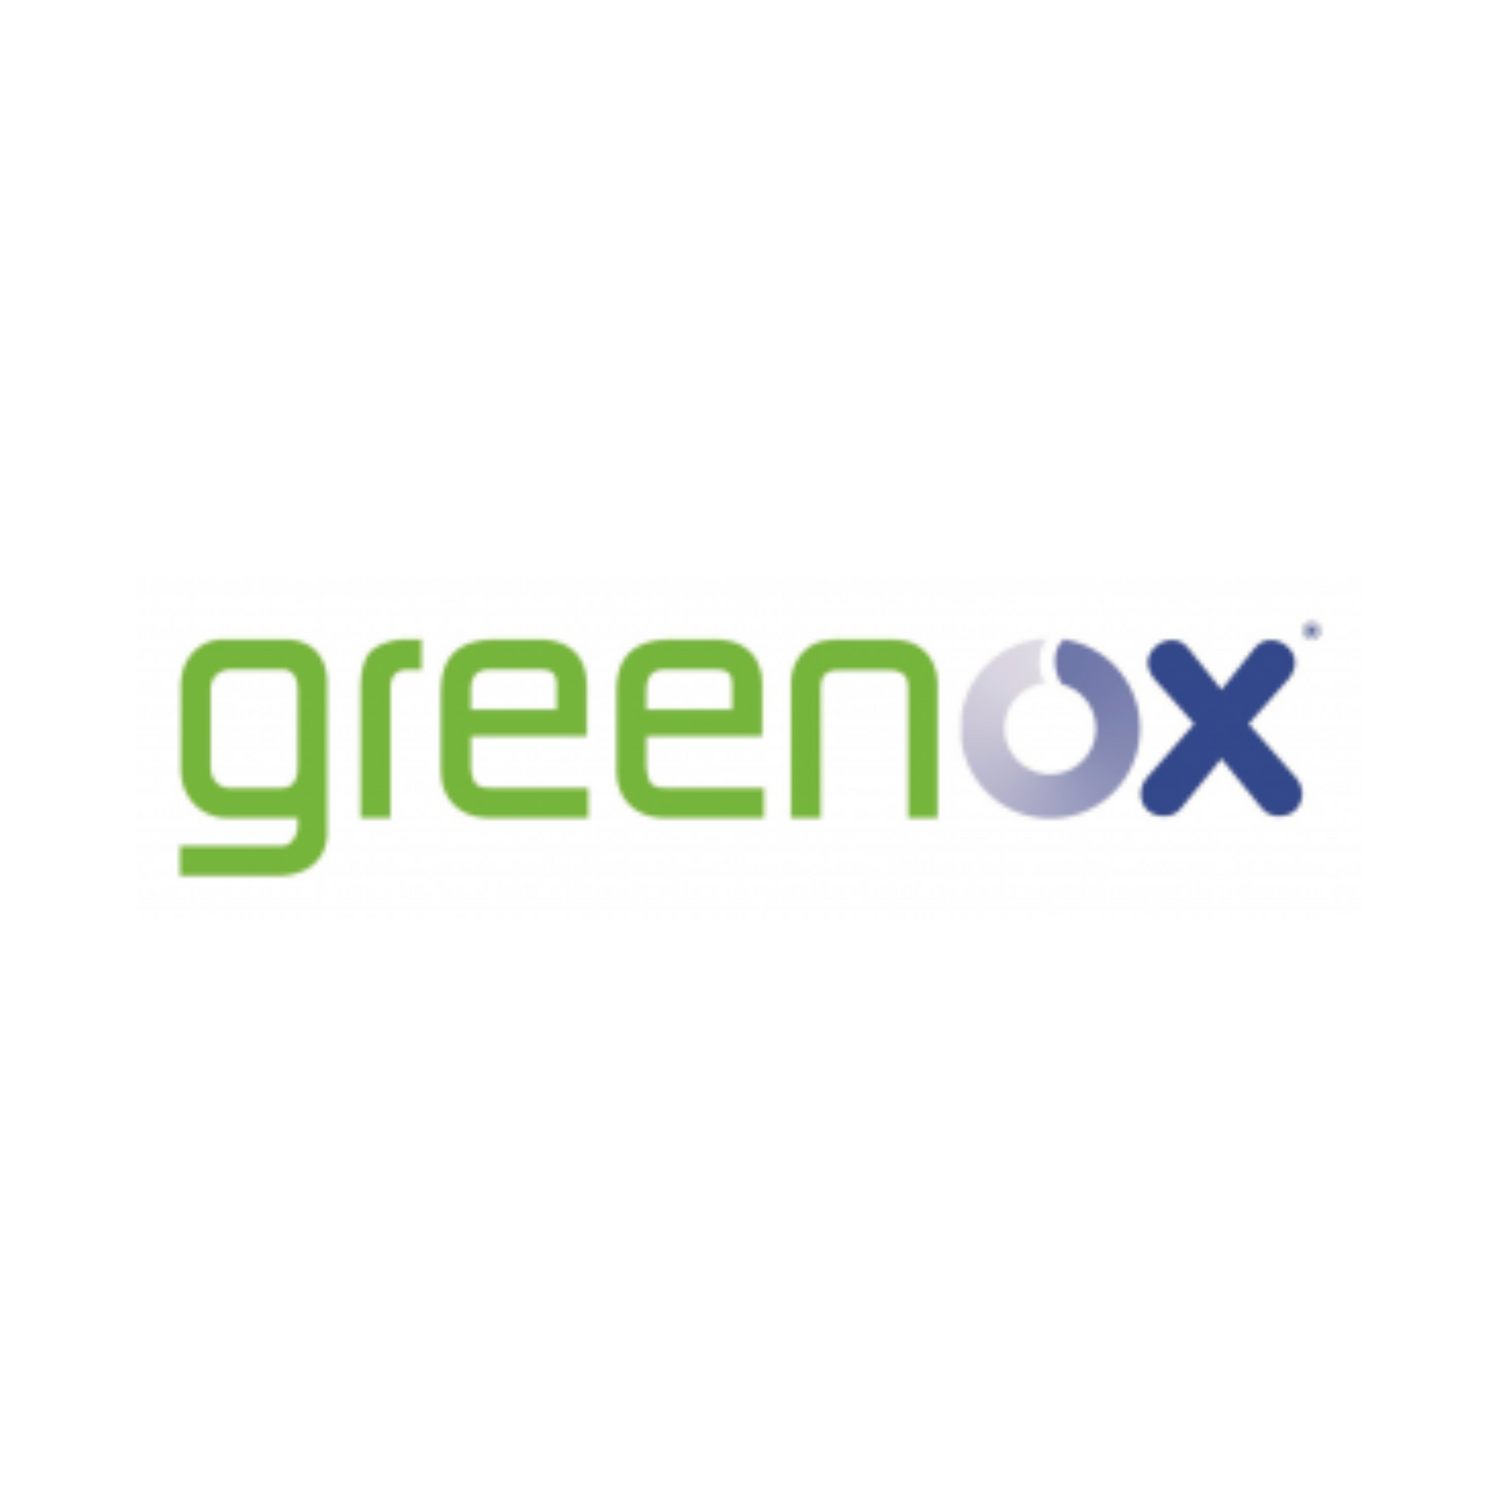 Greenox logo